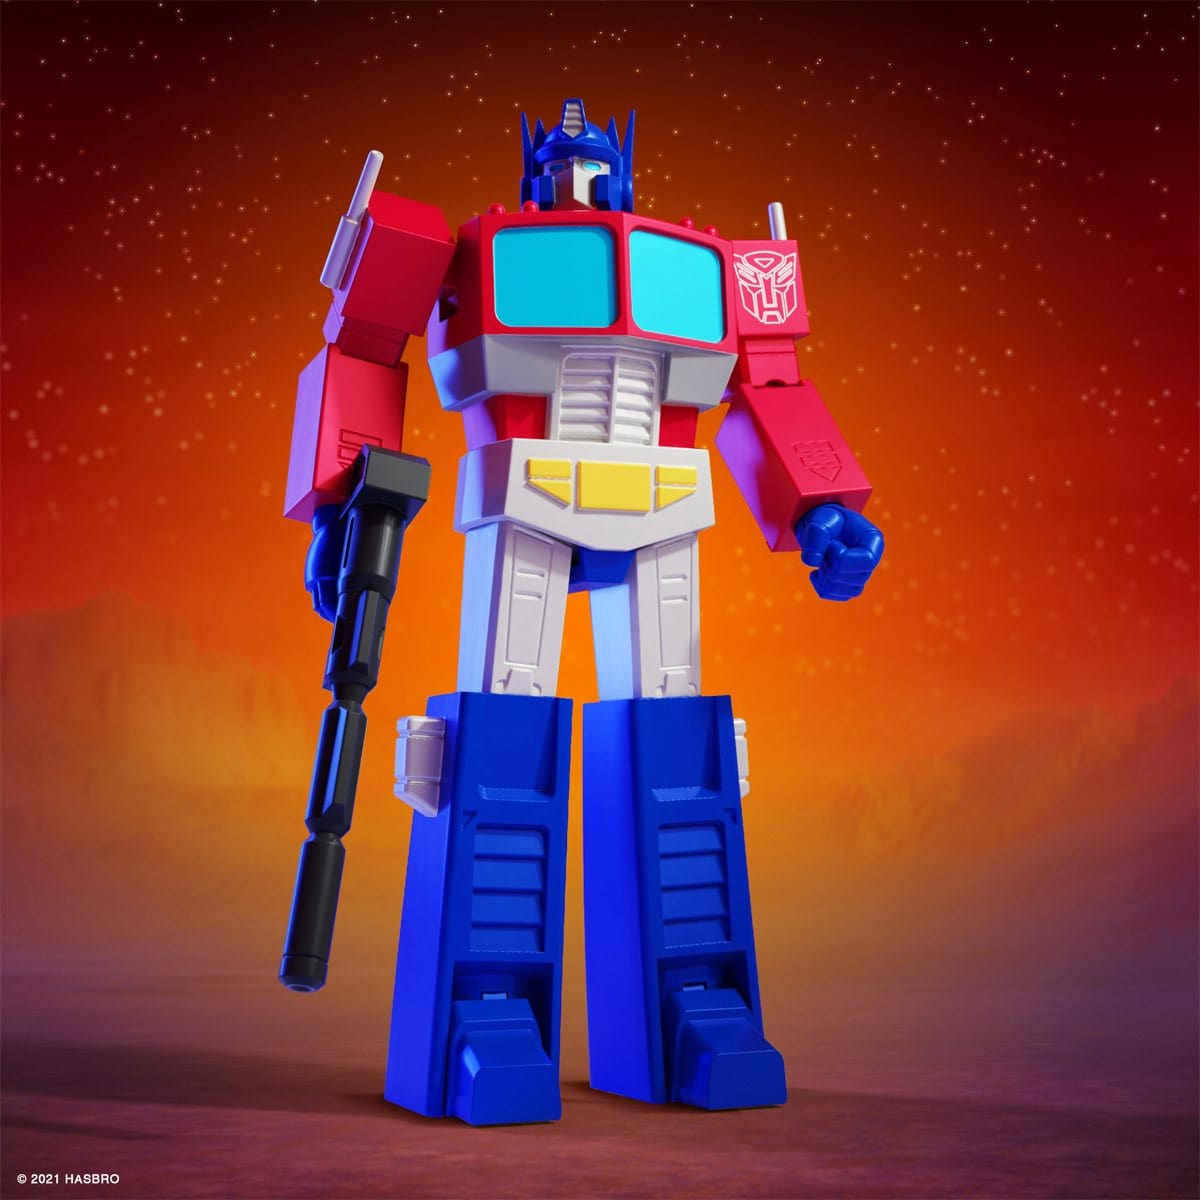 Super7 Transformers ULTIMATES! Optimus Prime Action Figure